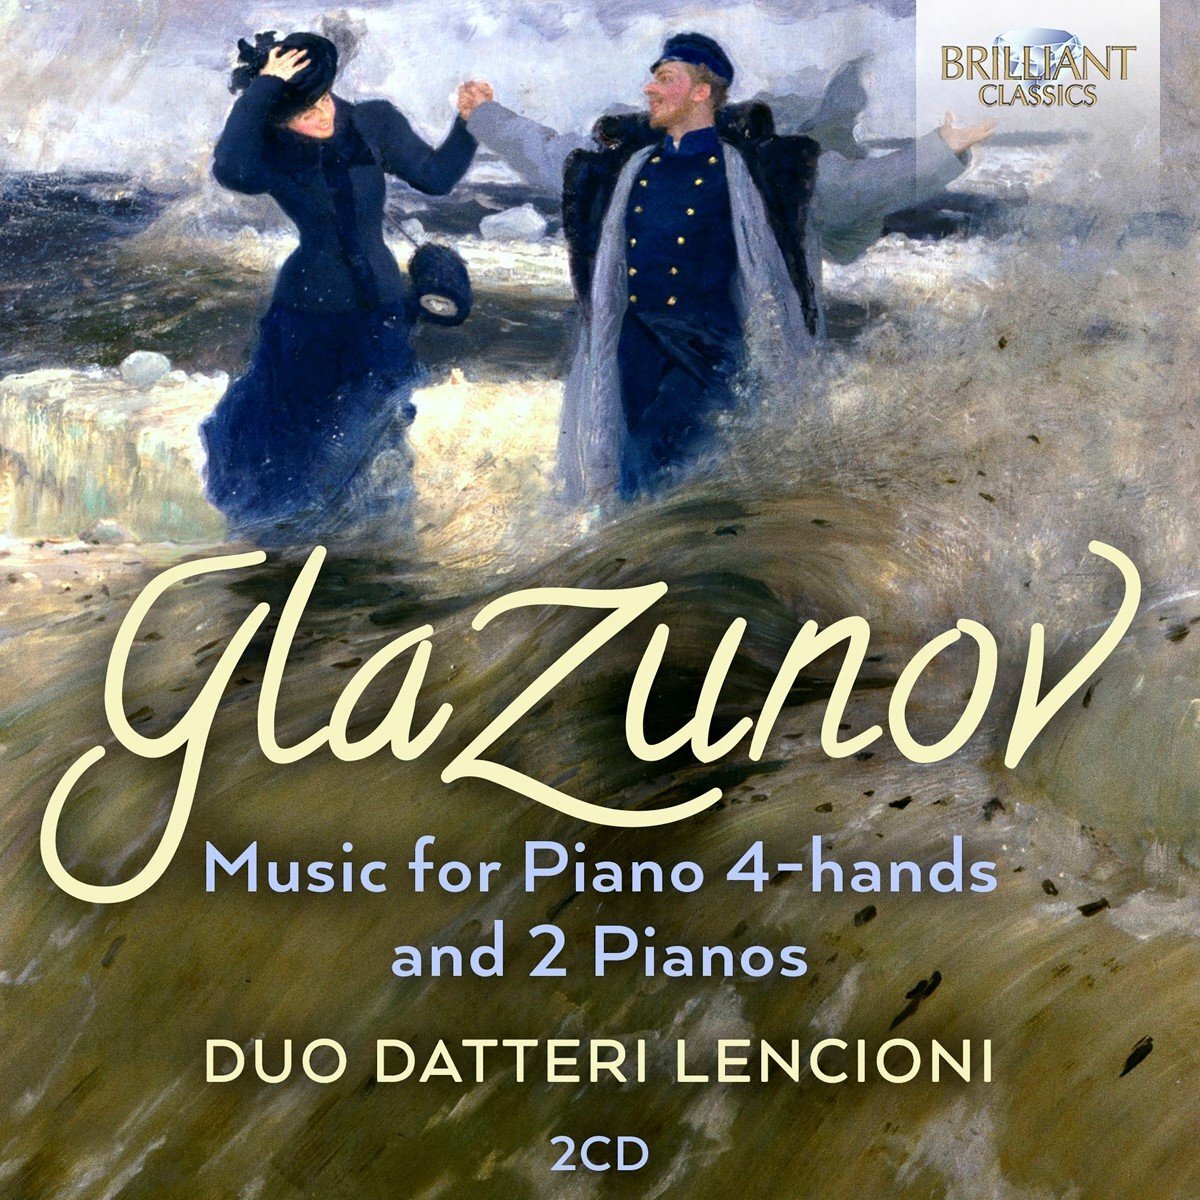 Brilliant Classics Glazunov: Music for Piano 4-hands and 2 Pianos